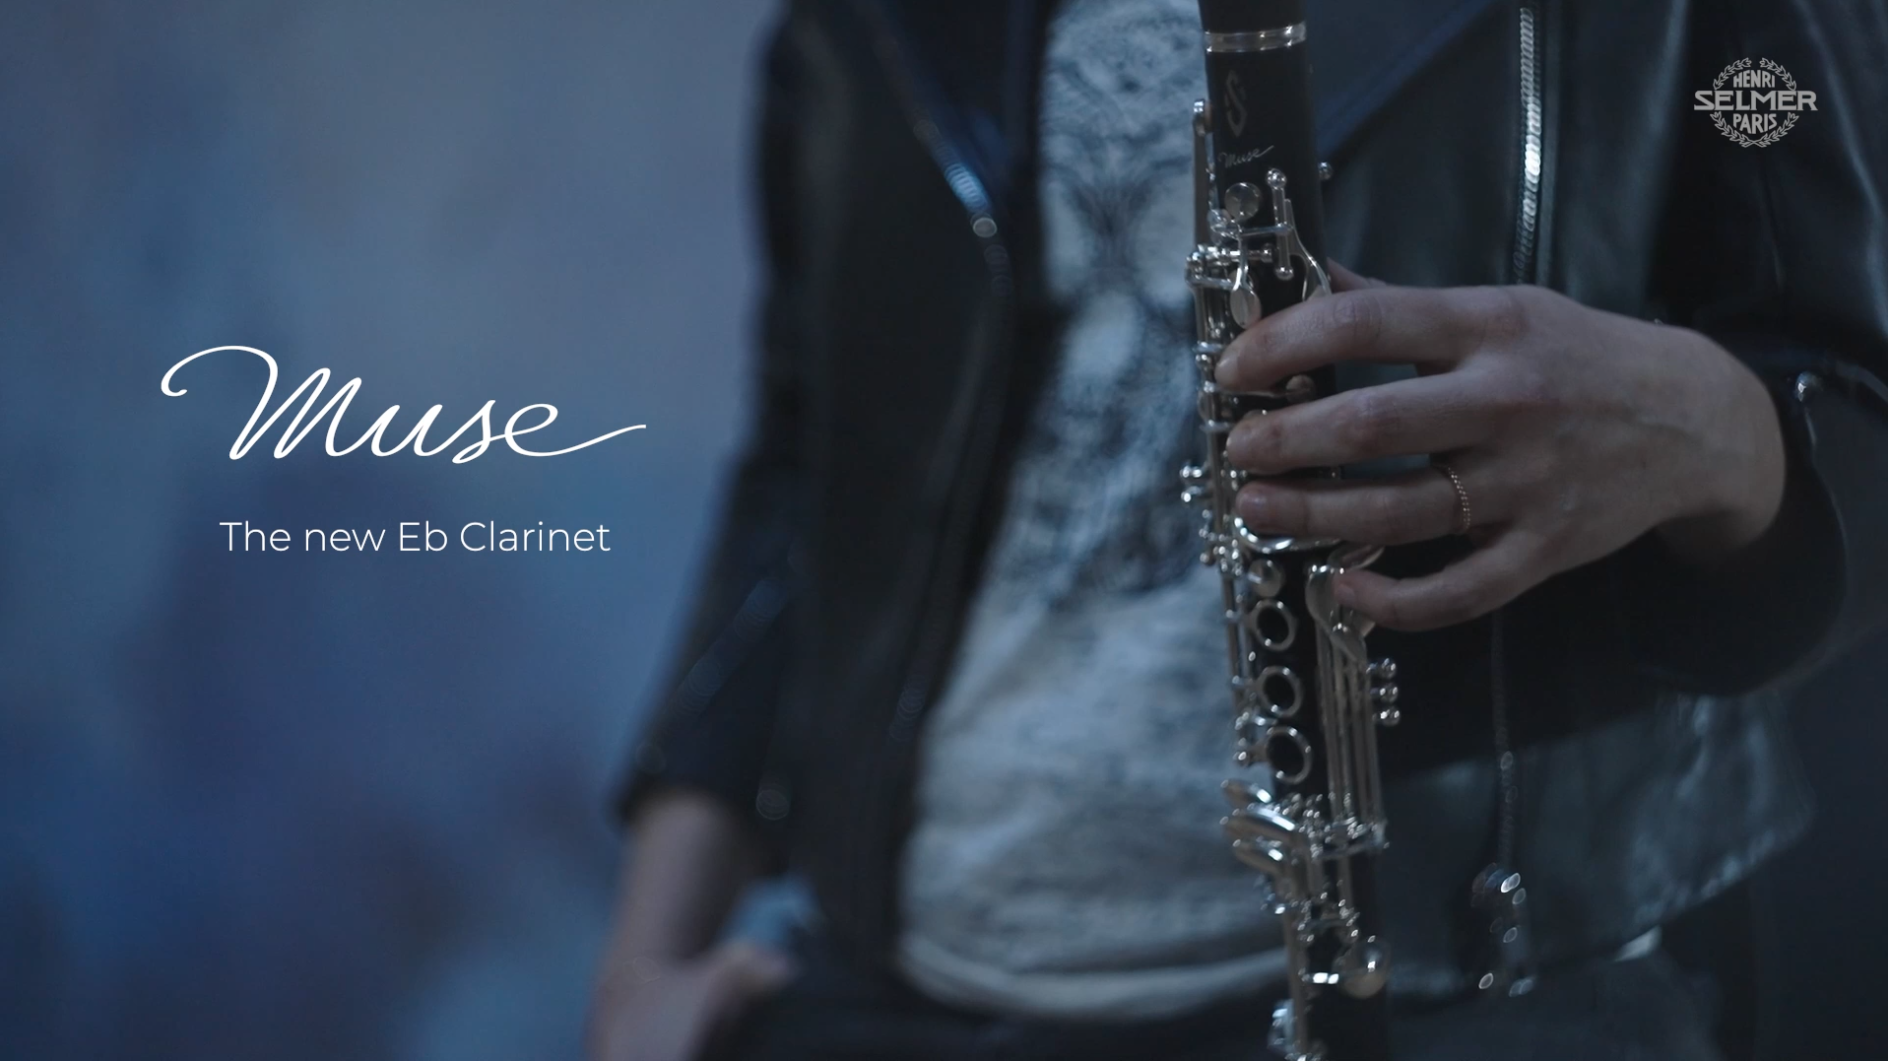 Charger la vidéo : {&quot;type&quot;:&quot;root&quot;,&quot;children&quot;:[{&quot;children&quot;:[{&quot;type&quot;:&quot;text&quot;,&quot;value&quot;:&quot;Durant quatre années, les équipes de Recherche et Développement Henri SELMER Paris et les clarinettistes d&#39;orchestres de différents pays retenus pour ce projet ont associé leurs connaissances et expériences pour donner naissance à &quot;},{&quot;type&quot;:&quot;text&quot;,&quot;value&quot;:&quot;la clarinette Mib professionnelle Muse&quot;,&quot;bold&quot;:true},{&quot;type&quot;:&quot;text&quot;,&quot;value&quot;:&quot;.&quot;}],&quot;type&quot;:&quot;paragraph&quot;},{&quot;children&quot;:[{&quot;type&quot;:&quot;text&quot;,&quot;value&quot;:&quot;D&#39;abord, nous sommes repartis de ce qui faisait le succès de la clarinette Mib Récital :&quot;},{&quot;type&quot;:&quot;text&quot;,&quot;value&quot;:&quot; l&#39;architecture de la perce et le diamètre extérieur&quot;,&quot;bold&quot;:true},{&quot;type&quot;:&quot;text&quot;,&quot;value&quot;:&quot;, donnant une grande confiance de jeu aux musiciens.&quot;}],&quot;type&quot;:&quot;paragraph&quot;},{&quot;type&quot;:&quot;paragraph&quot;,&quot;children&quot;:[{&quot;type&quot;:&quot;text&quot;,&quot;value&quot;:&quot;&quot;}]},{&quot;type&quot;:&quot;paragraph&quot;,&quot;children&quot;:[{&quot;type&quot;:&quot;text&quot;,&quot;value&quot;:&quot;Nous nous sommes ensuite inspirés des avancées&quot;},{&quot;type&quot;:&quot;text&quot;,&quot;value&quot;:&quot; &quot;,&quot;bold&quot;:true},{&quot;type&quot;:&quot;text&quot;,&quot;value&quot;:&quot;liées aux clarinettes Sib et La Muse pour modifier la forme de certains trous et emplacements, afin d&#39;obtenir un &quot;},{&quot;type&quot;:&quot;text&quot;,&quot;value&quot;:&quot;meilleur équilibre de justesse&quot;,&quot;bold&quot;:true},{&quot;type&quot;:&quot;text&quot;,&quot;value&quot;:&quot;.&quot;}]},{&quot;type&quot;:&quot;paragraph&quot;,&quot;children&quot;:[{&quot;type&quot;:&quot;text&quot;,&quot;value&quot;:&quot;Autre nouveauté : la clarinette a été tamponnée en liège (sauf les 4 tampons des graves qui restent en cuir), afin de garantir une &quot;},{&quot;type&quot;:&quot;text&quot;,&quot;value&quot;:&quot;émission plus facile, une précision de jeu et une meilleure définition du son&quot;,&quot;bold&quot;:true},{&quot;type&quot;:&quot;text&quot;,&quot;value&quot;:&quot;.&quot;}]},{&quot;type&quot;:&quot;paragraph&quot;,&quot;children&quot;:[{&quot;type&quot;:&quot;text&quot;,&quot;value&quot;:&quot;&quot;}]}]}